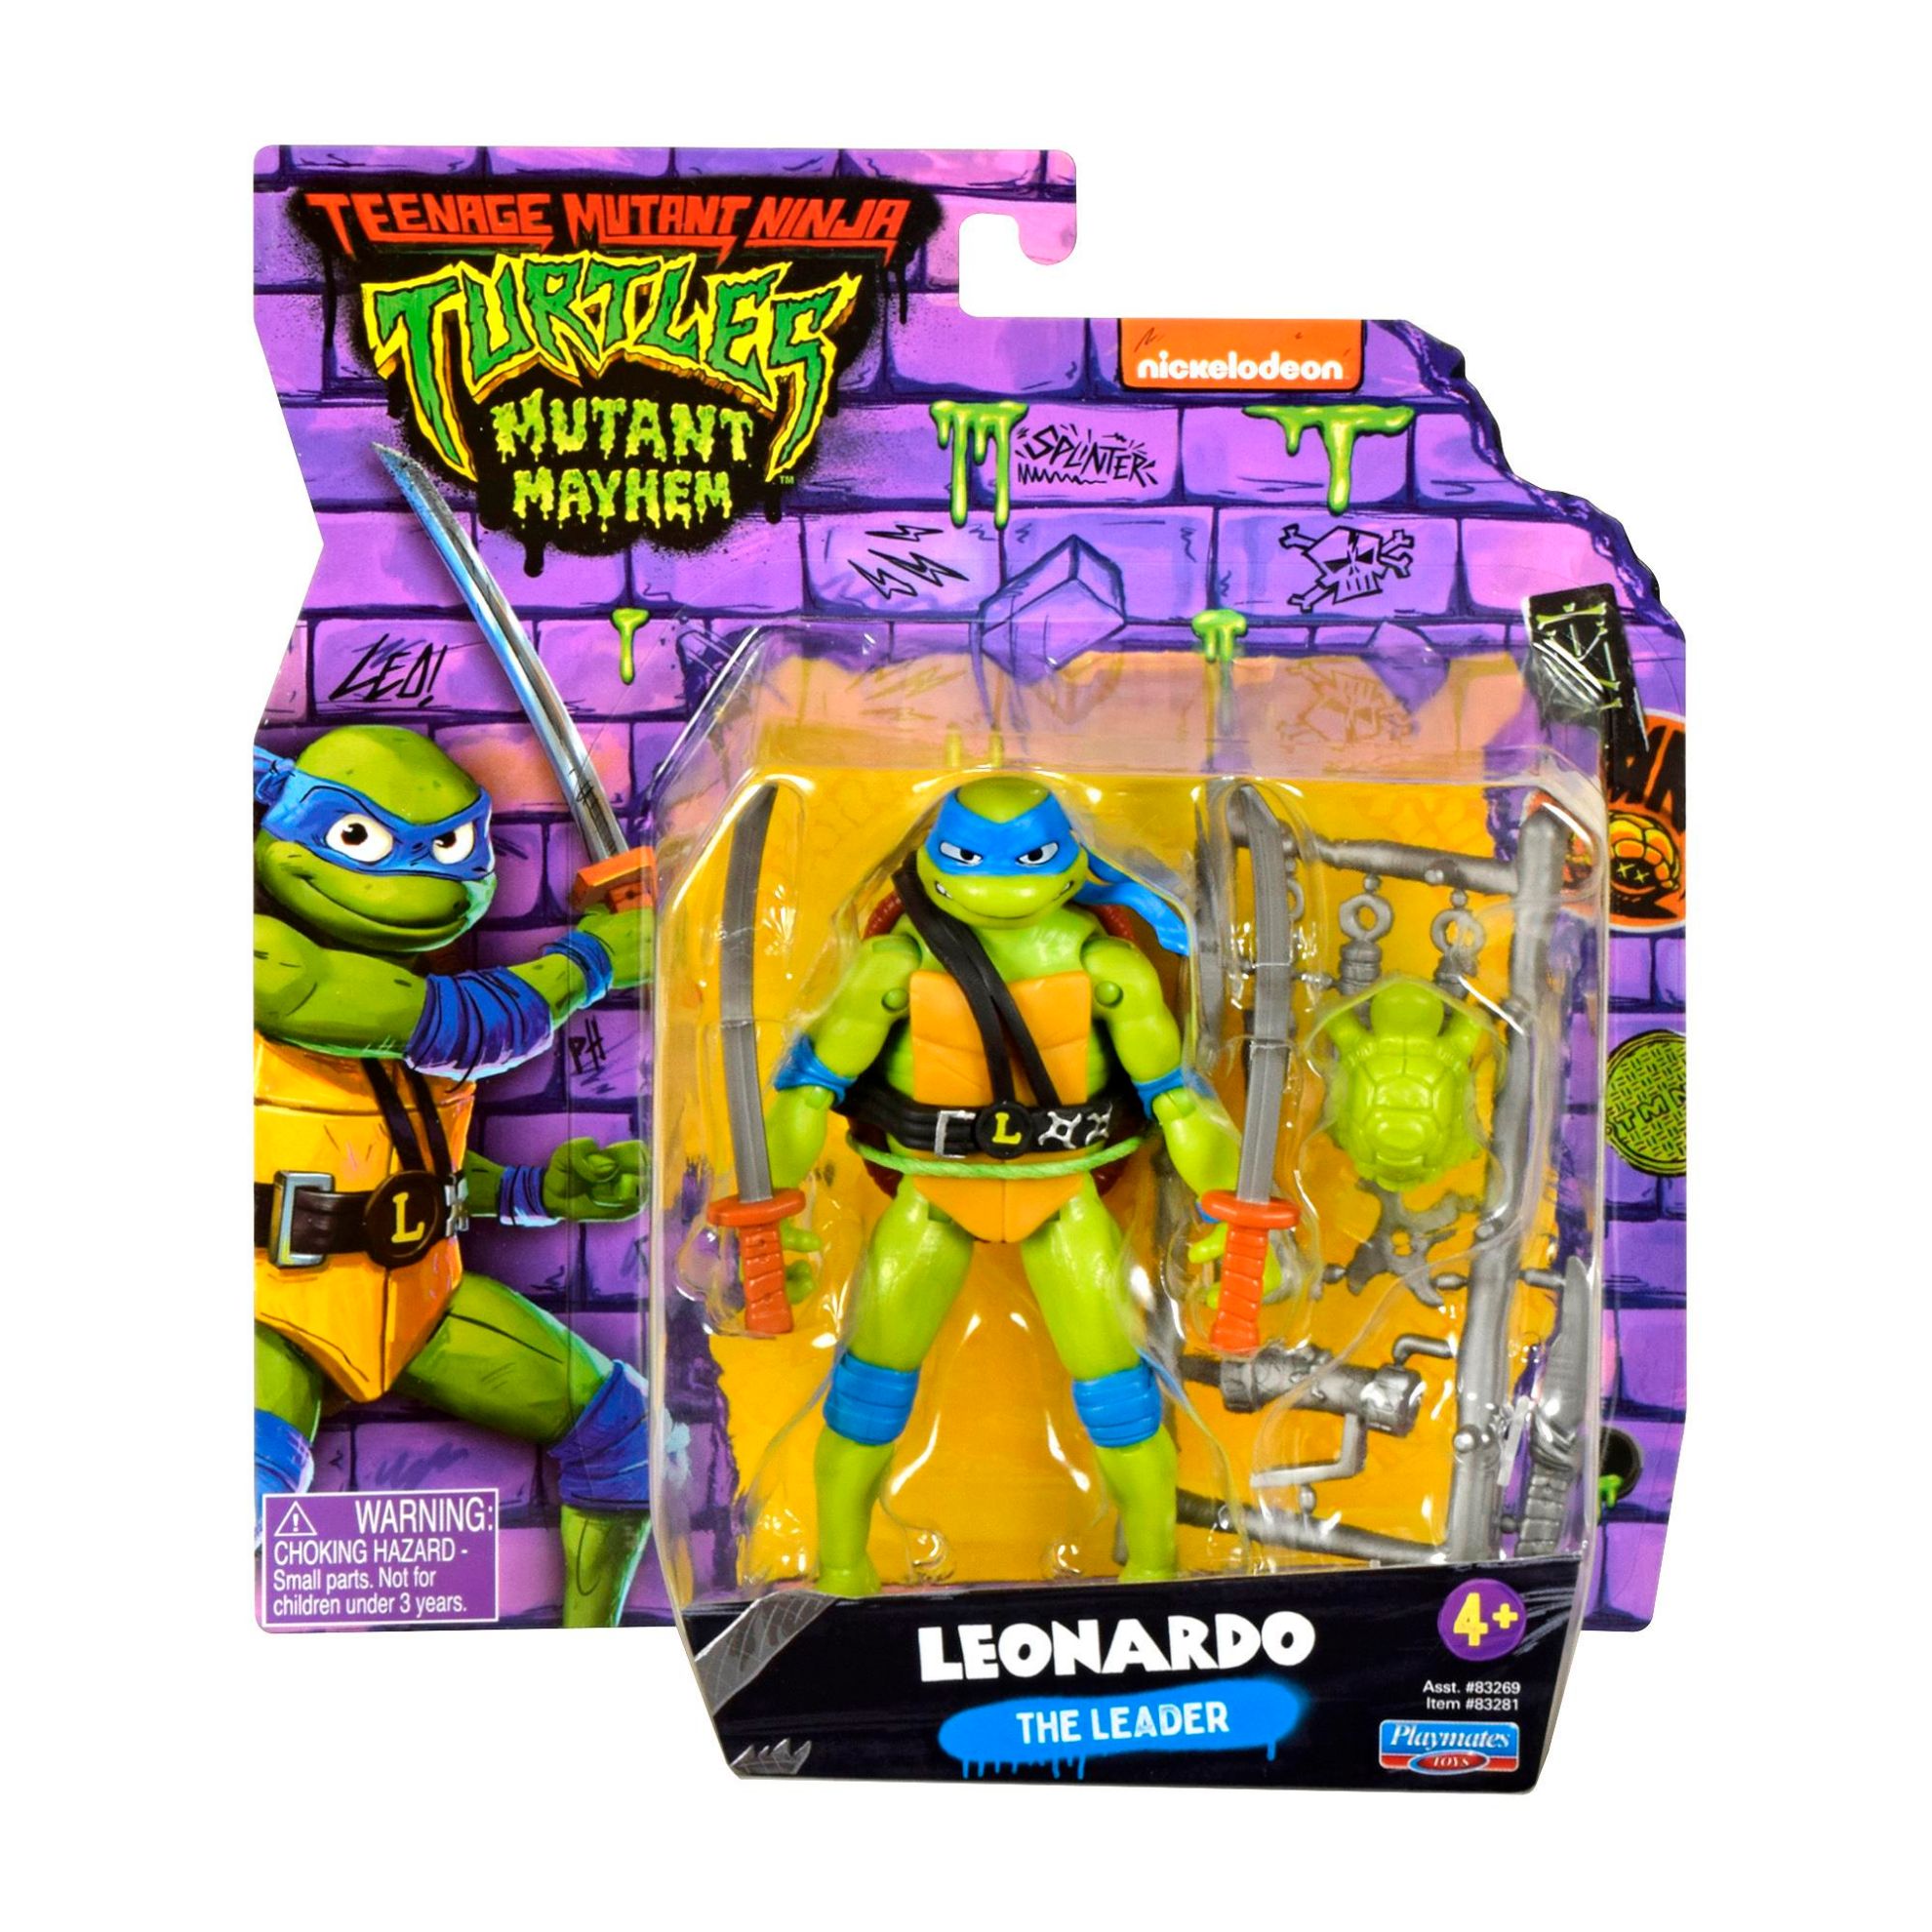 https://www.character-online.com/images/thumbs/0019295_teenage-mutant-ninja-turtles-movie-basic-figure-leonardo.jpeg